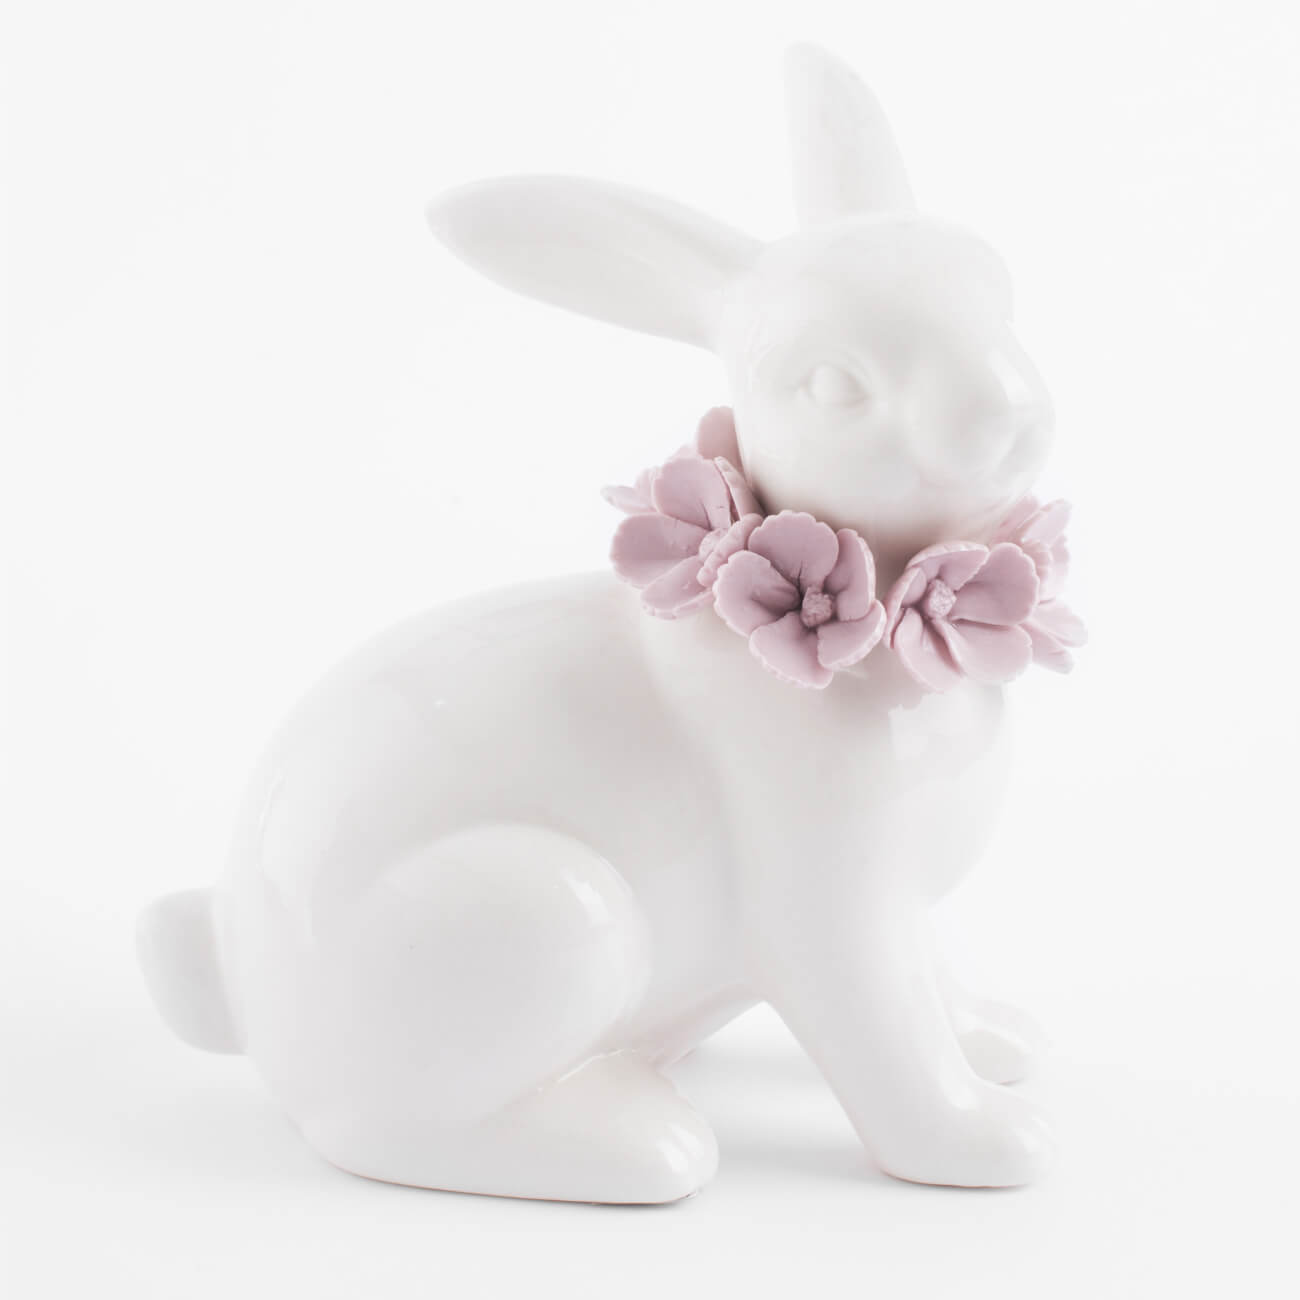 Статуэтка, 15 см, фарфор Porcelain, белая, Кролик в цветах, Pure Easter статуэтка 12 см фарфор p белая кролик в очном венке easter